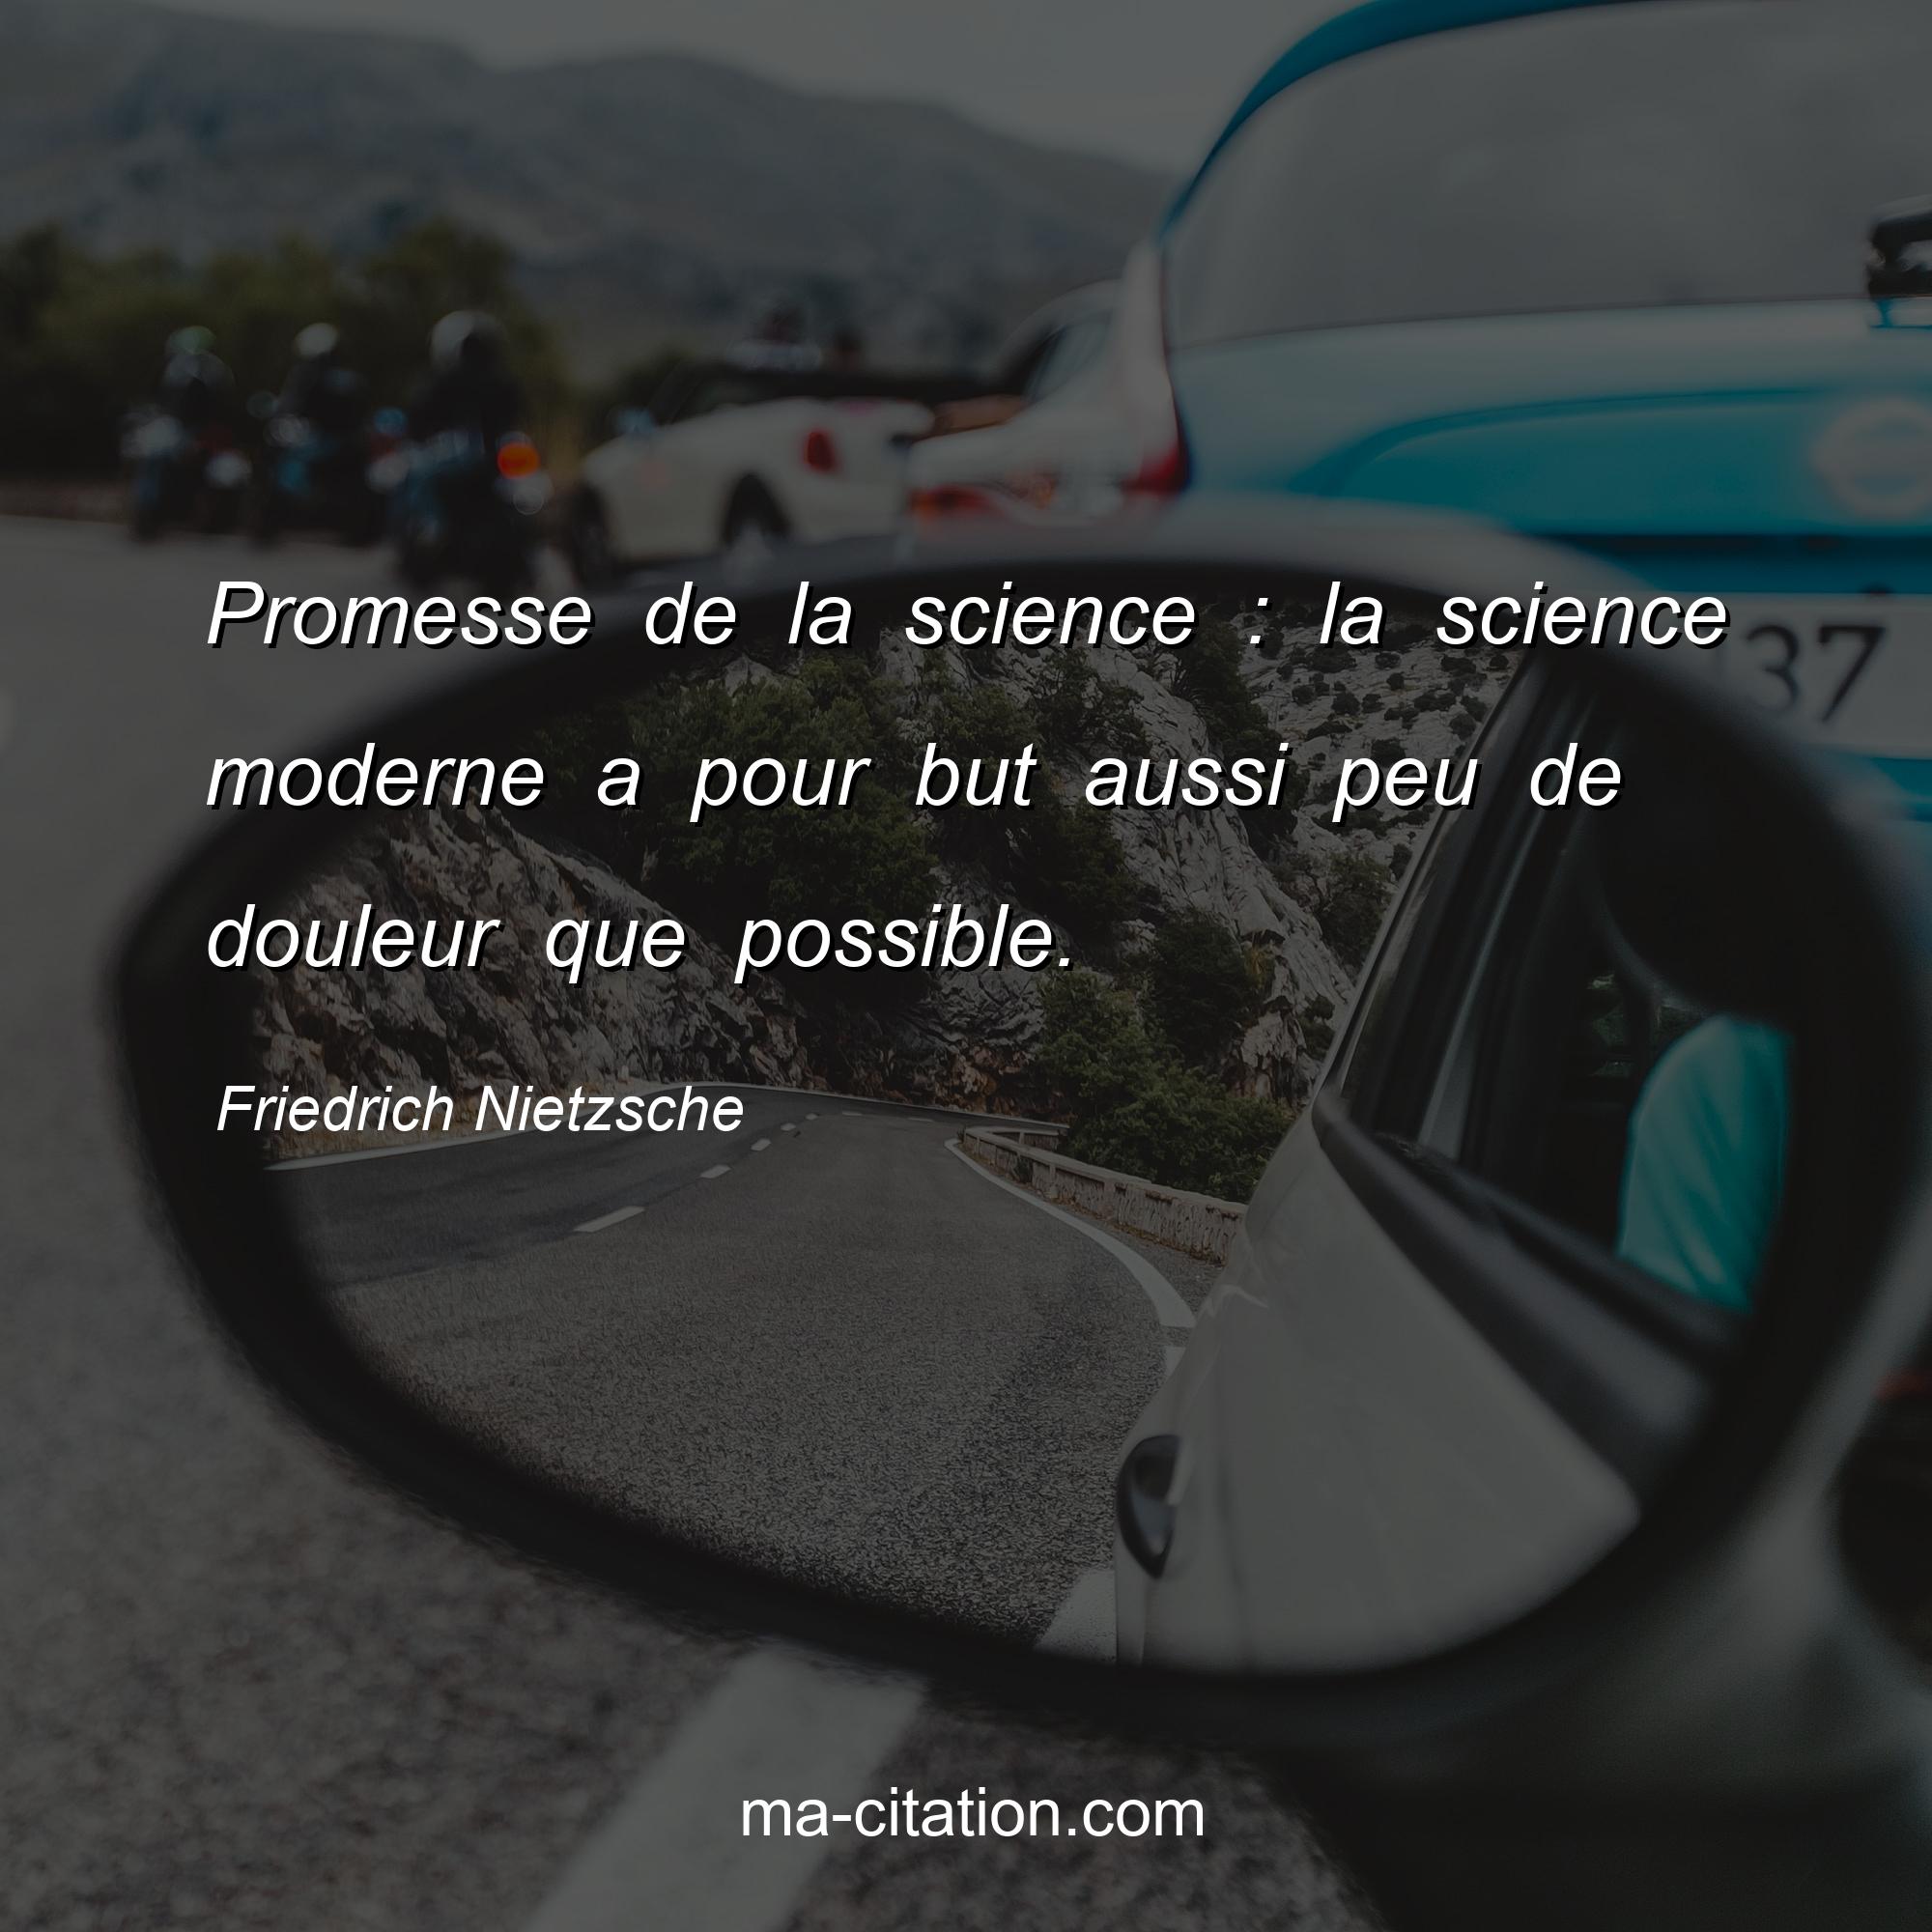 Friedrich Nietzsche : Promesse de la science : la science moderne a pour but aussi peu de douleur que possible.